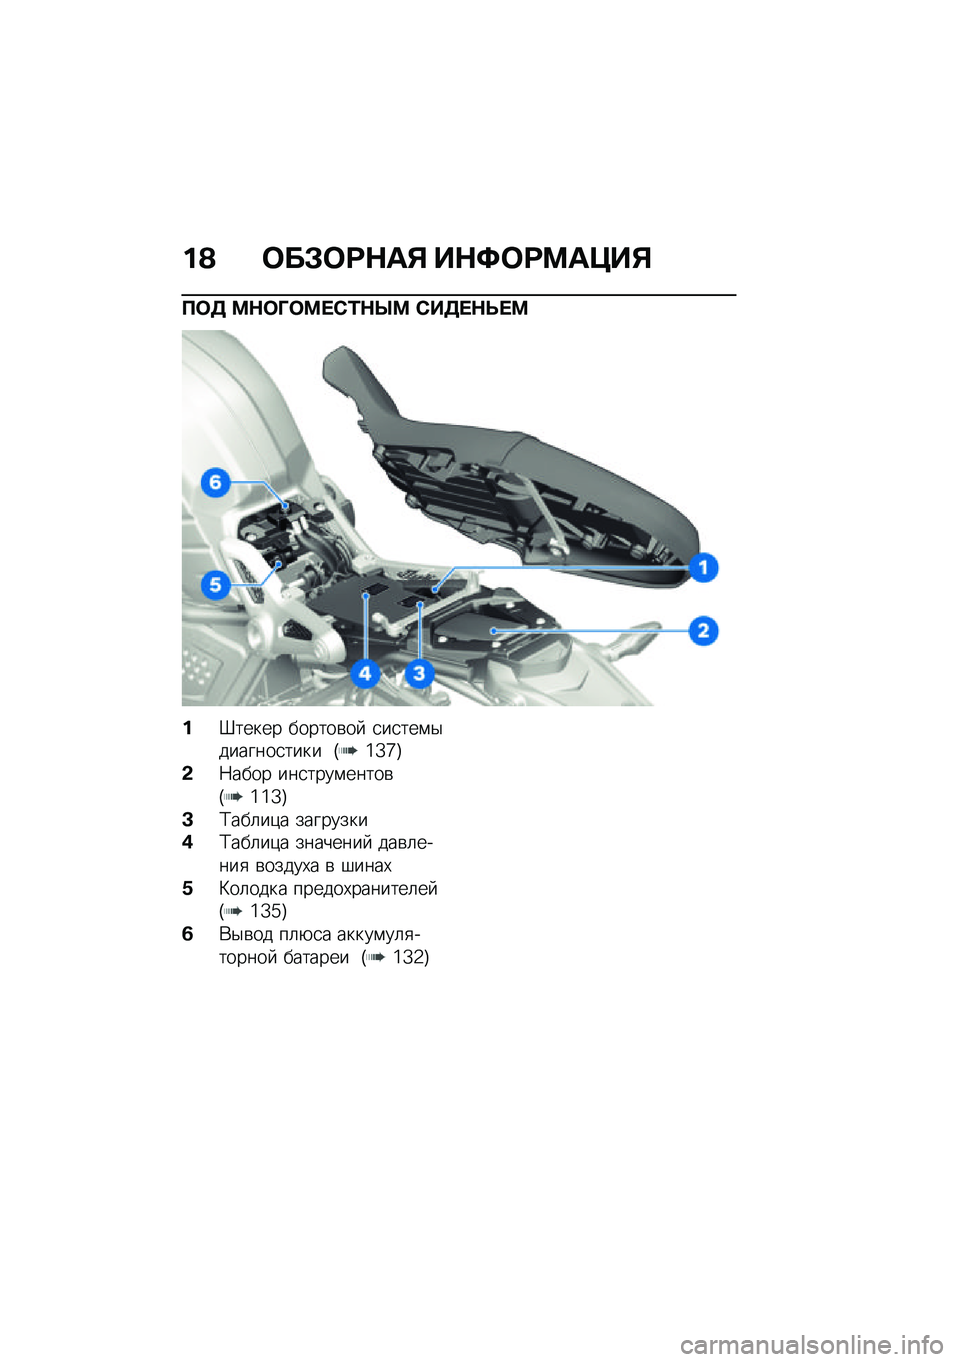 BMW MOTORRAD R NINE T SCRAMBLER 2021  Руководство по эксплуатации (in Russian) ��A �	��#�	�:�$��% ��$�;�	�:�<��=��%
�?�	�3 �<�$�	�O�	�<� �)�/�$�Q�< �)��3� �$�F� �<
��d����� ������\b��  �
��
���\f�$�������
���� �G�\�Z�`�H
�&�7���� ���
����